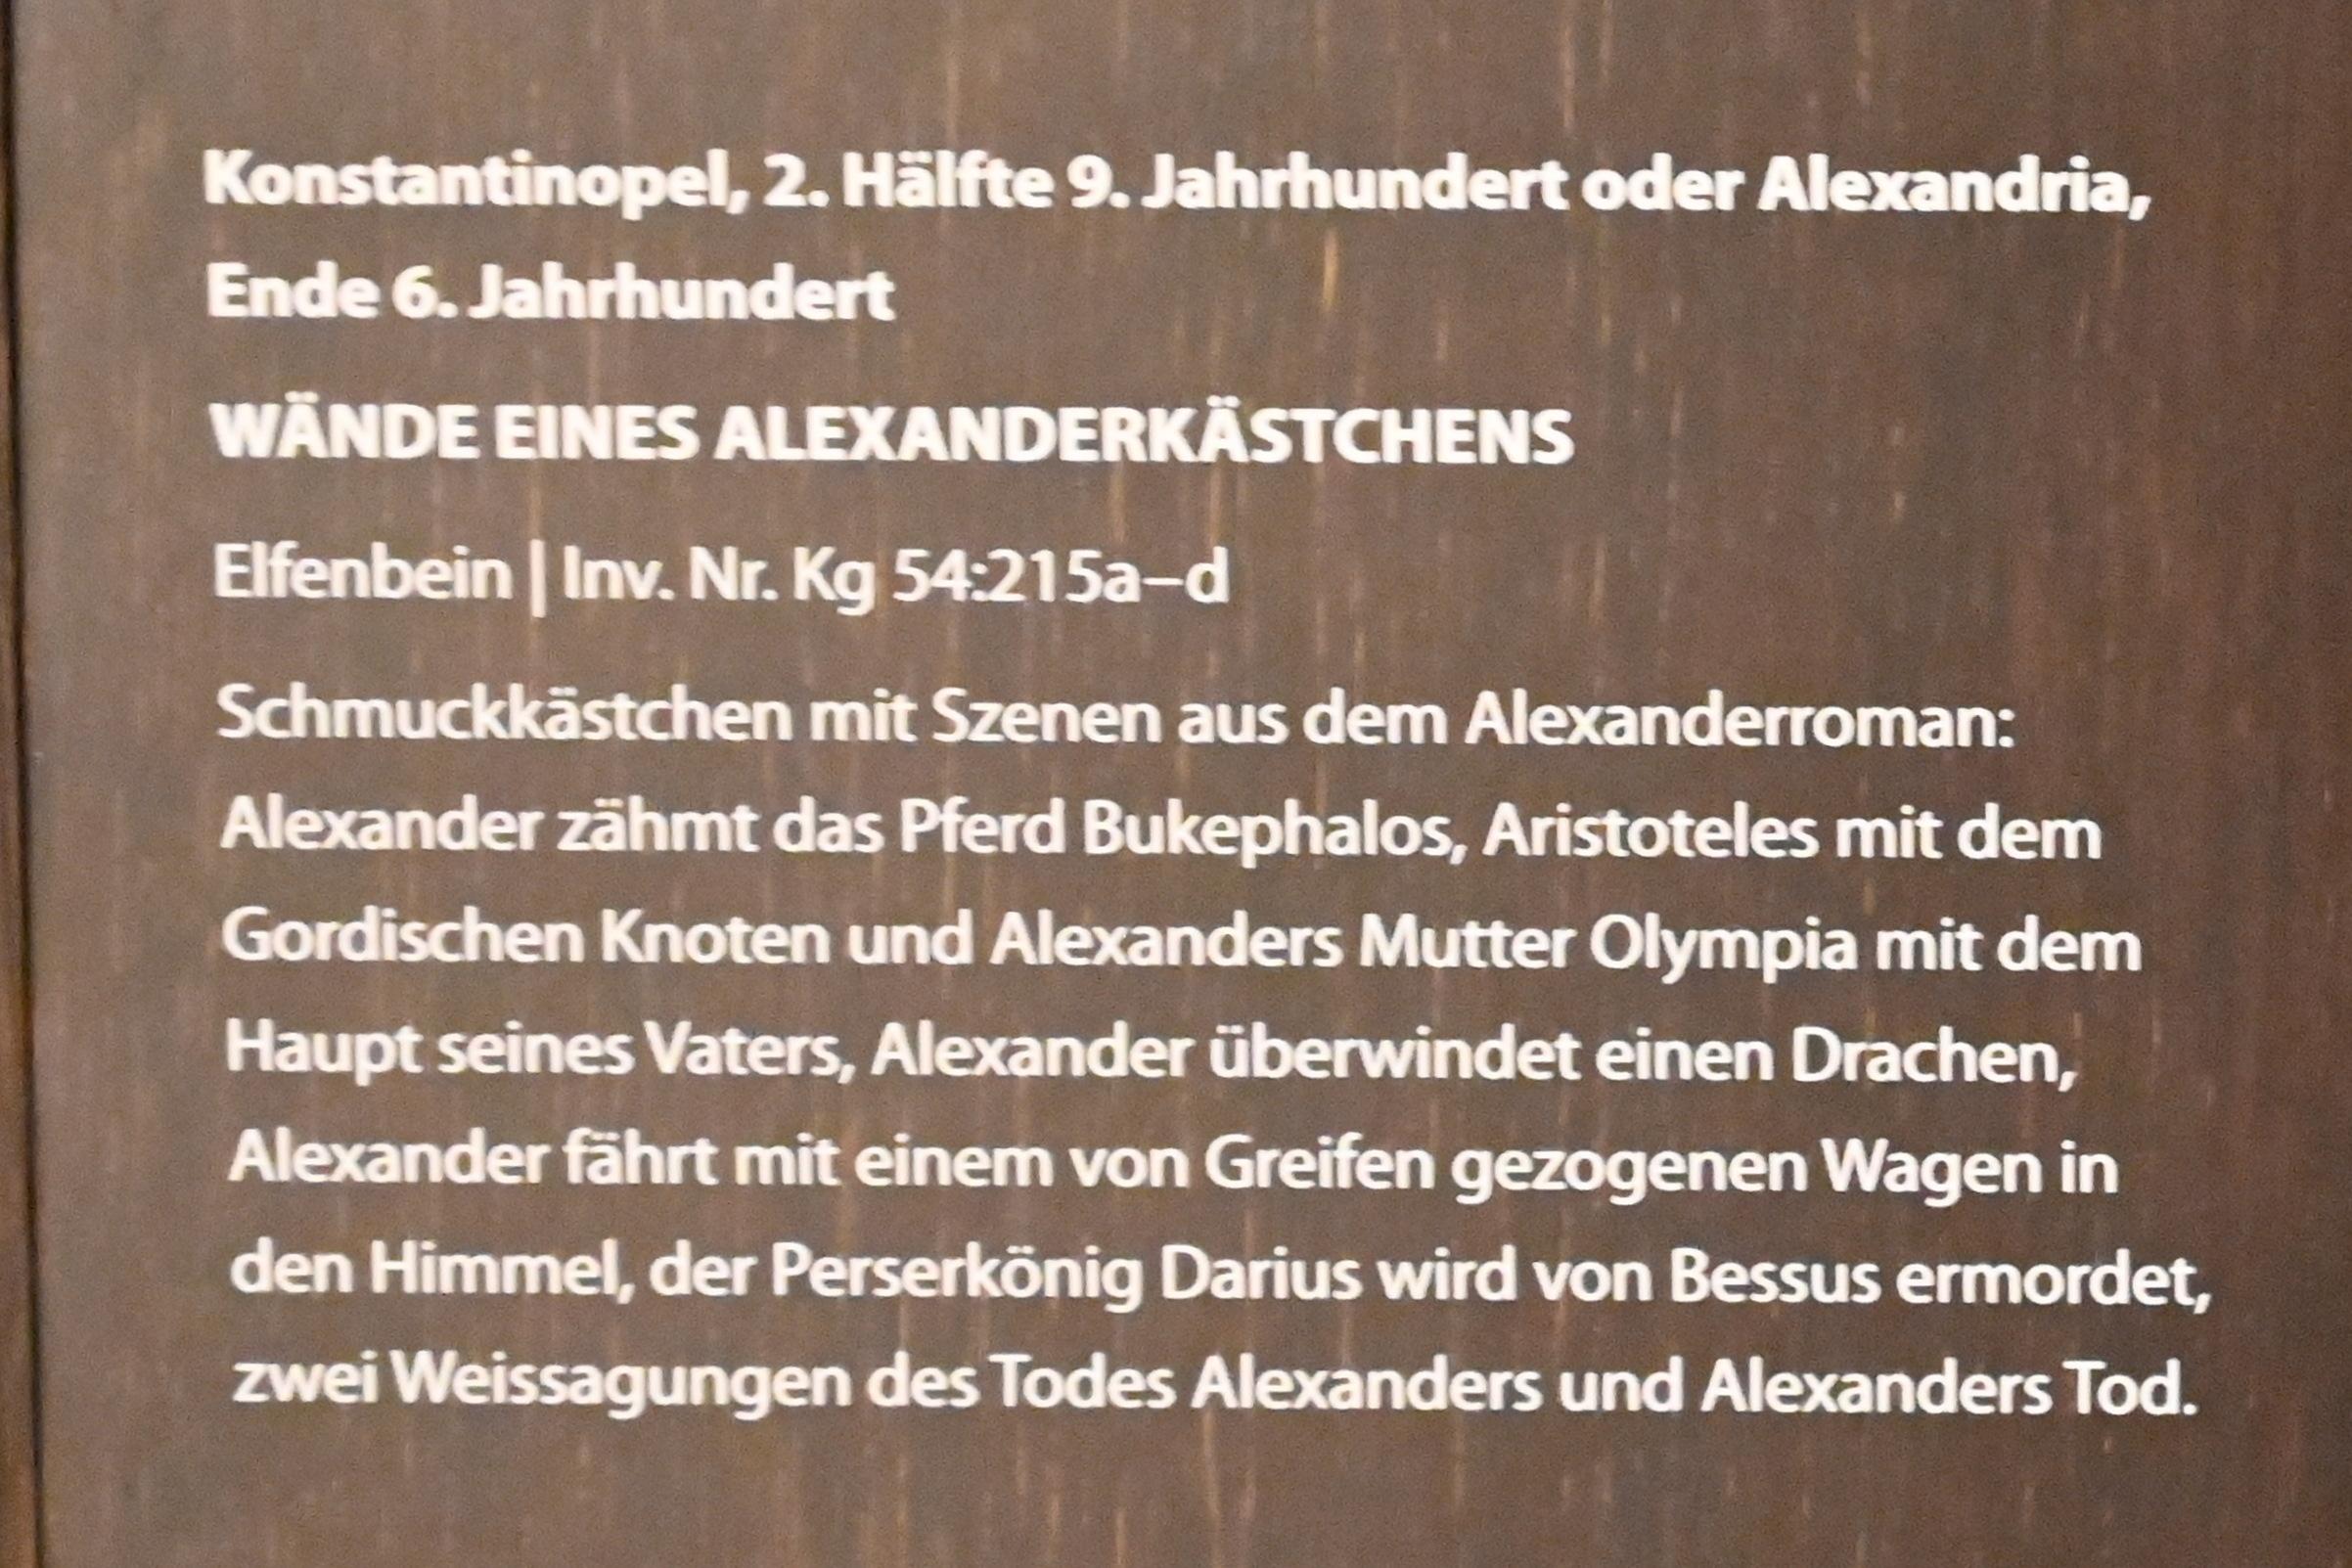 Wände eines Alexanderkästchens, Darmstadt, Hessisches Landesmuseum, Kunsthandwerk, 2. Hälfte 9. Jhd., Bild 5/5